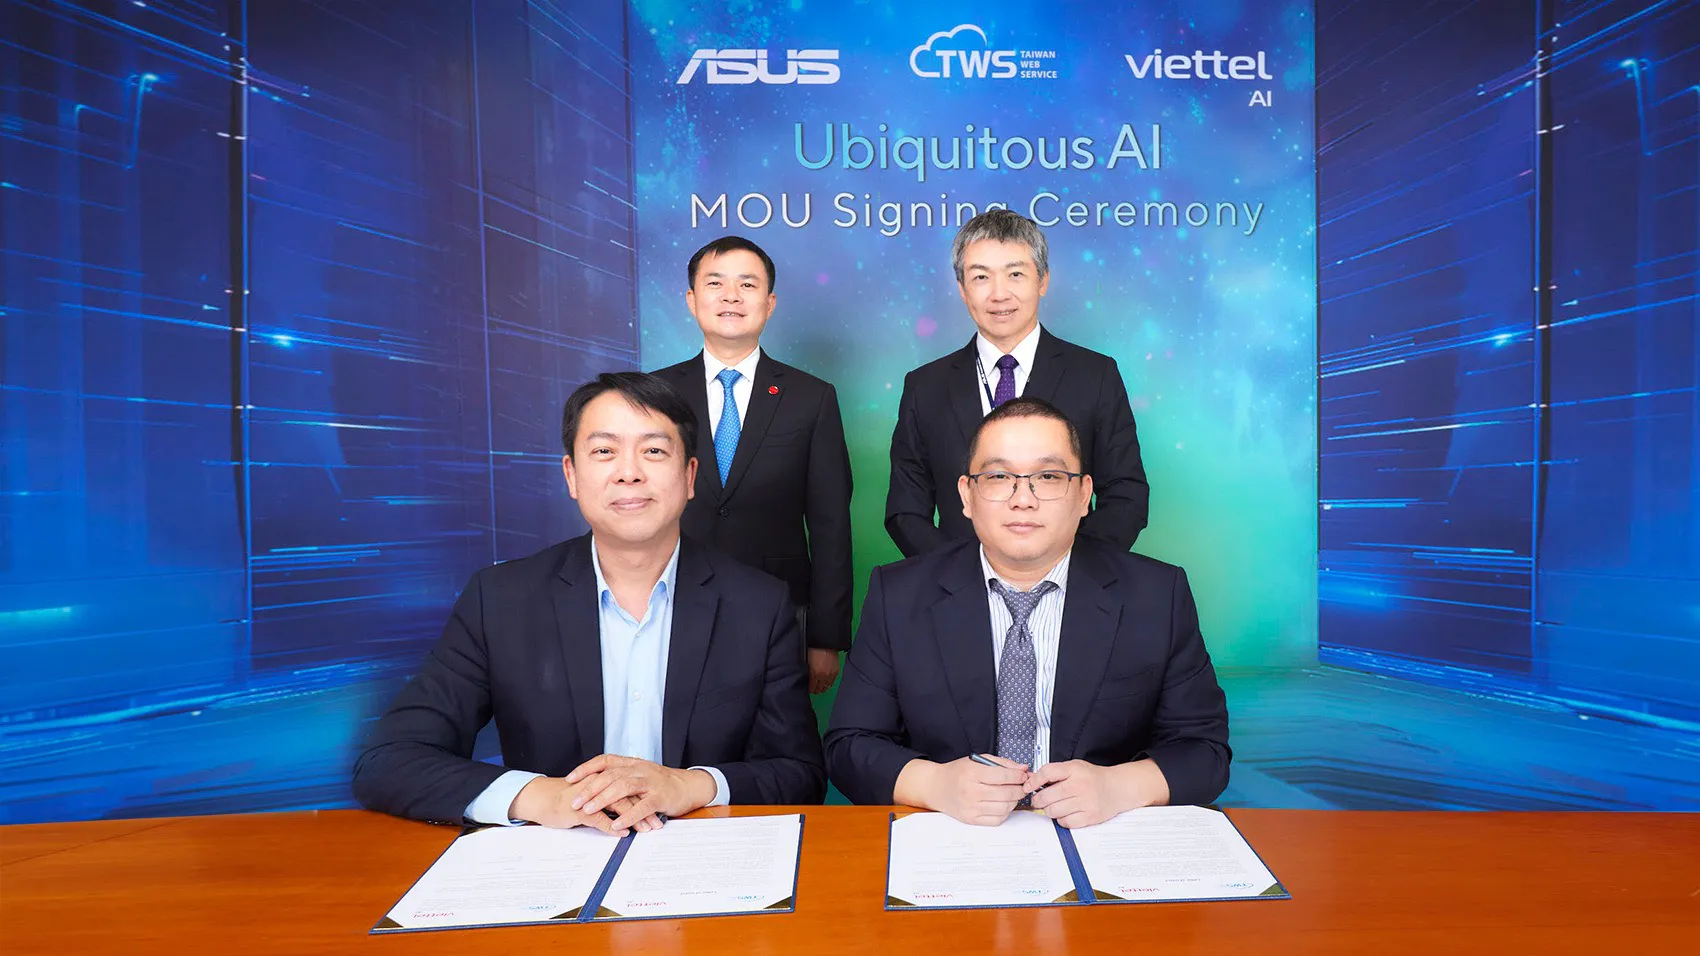 TWSC ký kết biên bản ghi nhớ với Viettel AI nhằm thúc đẩy đổi mới sáng tạo trong điện toán đám mây và AI